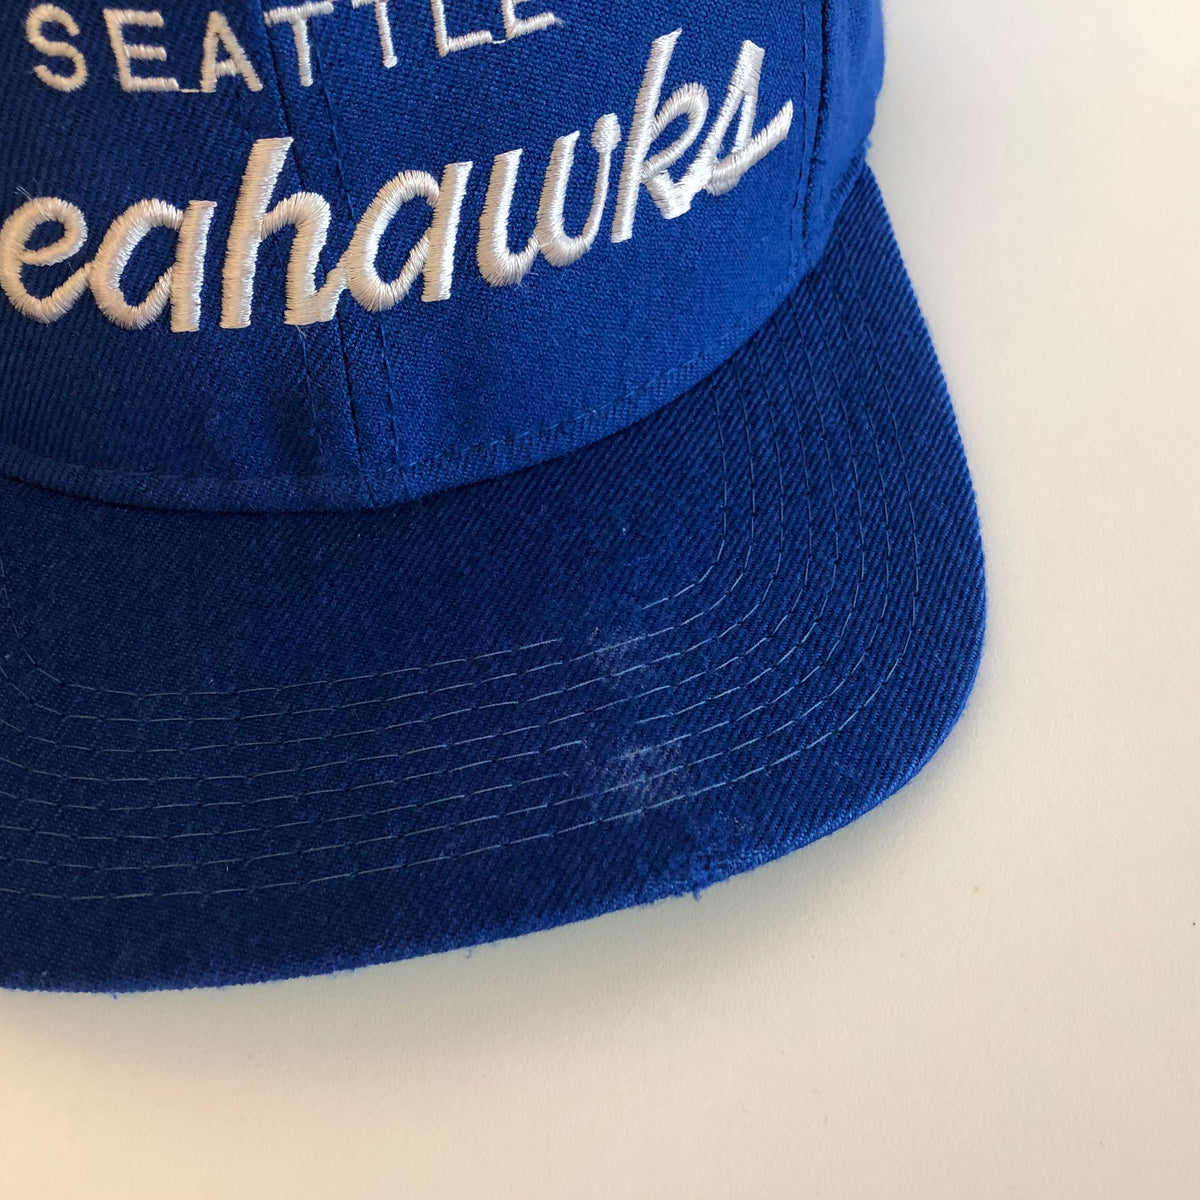 Vintage Seattle Seahawks Snapback Hat Sports Specialties Script